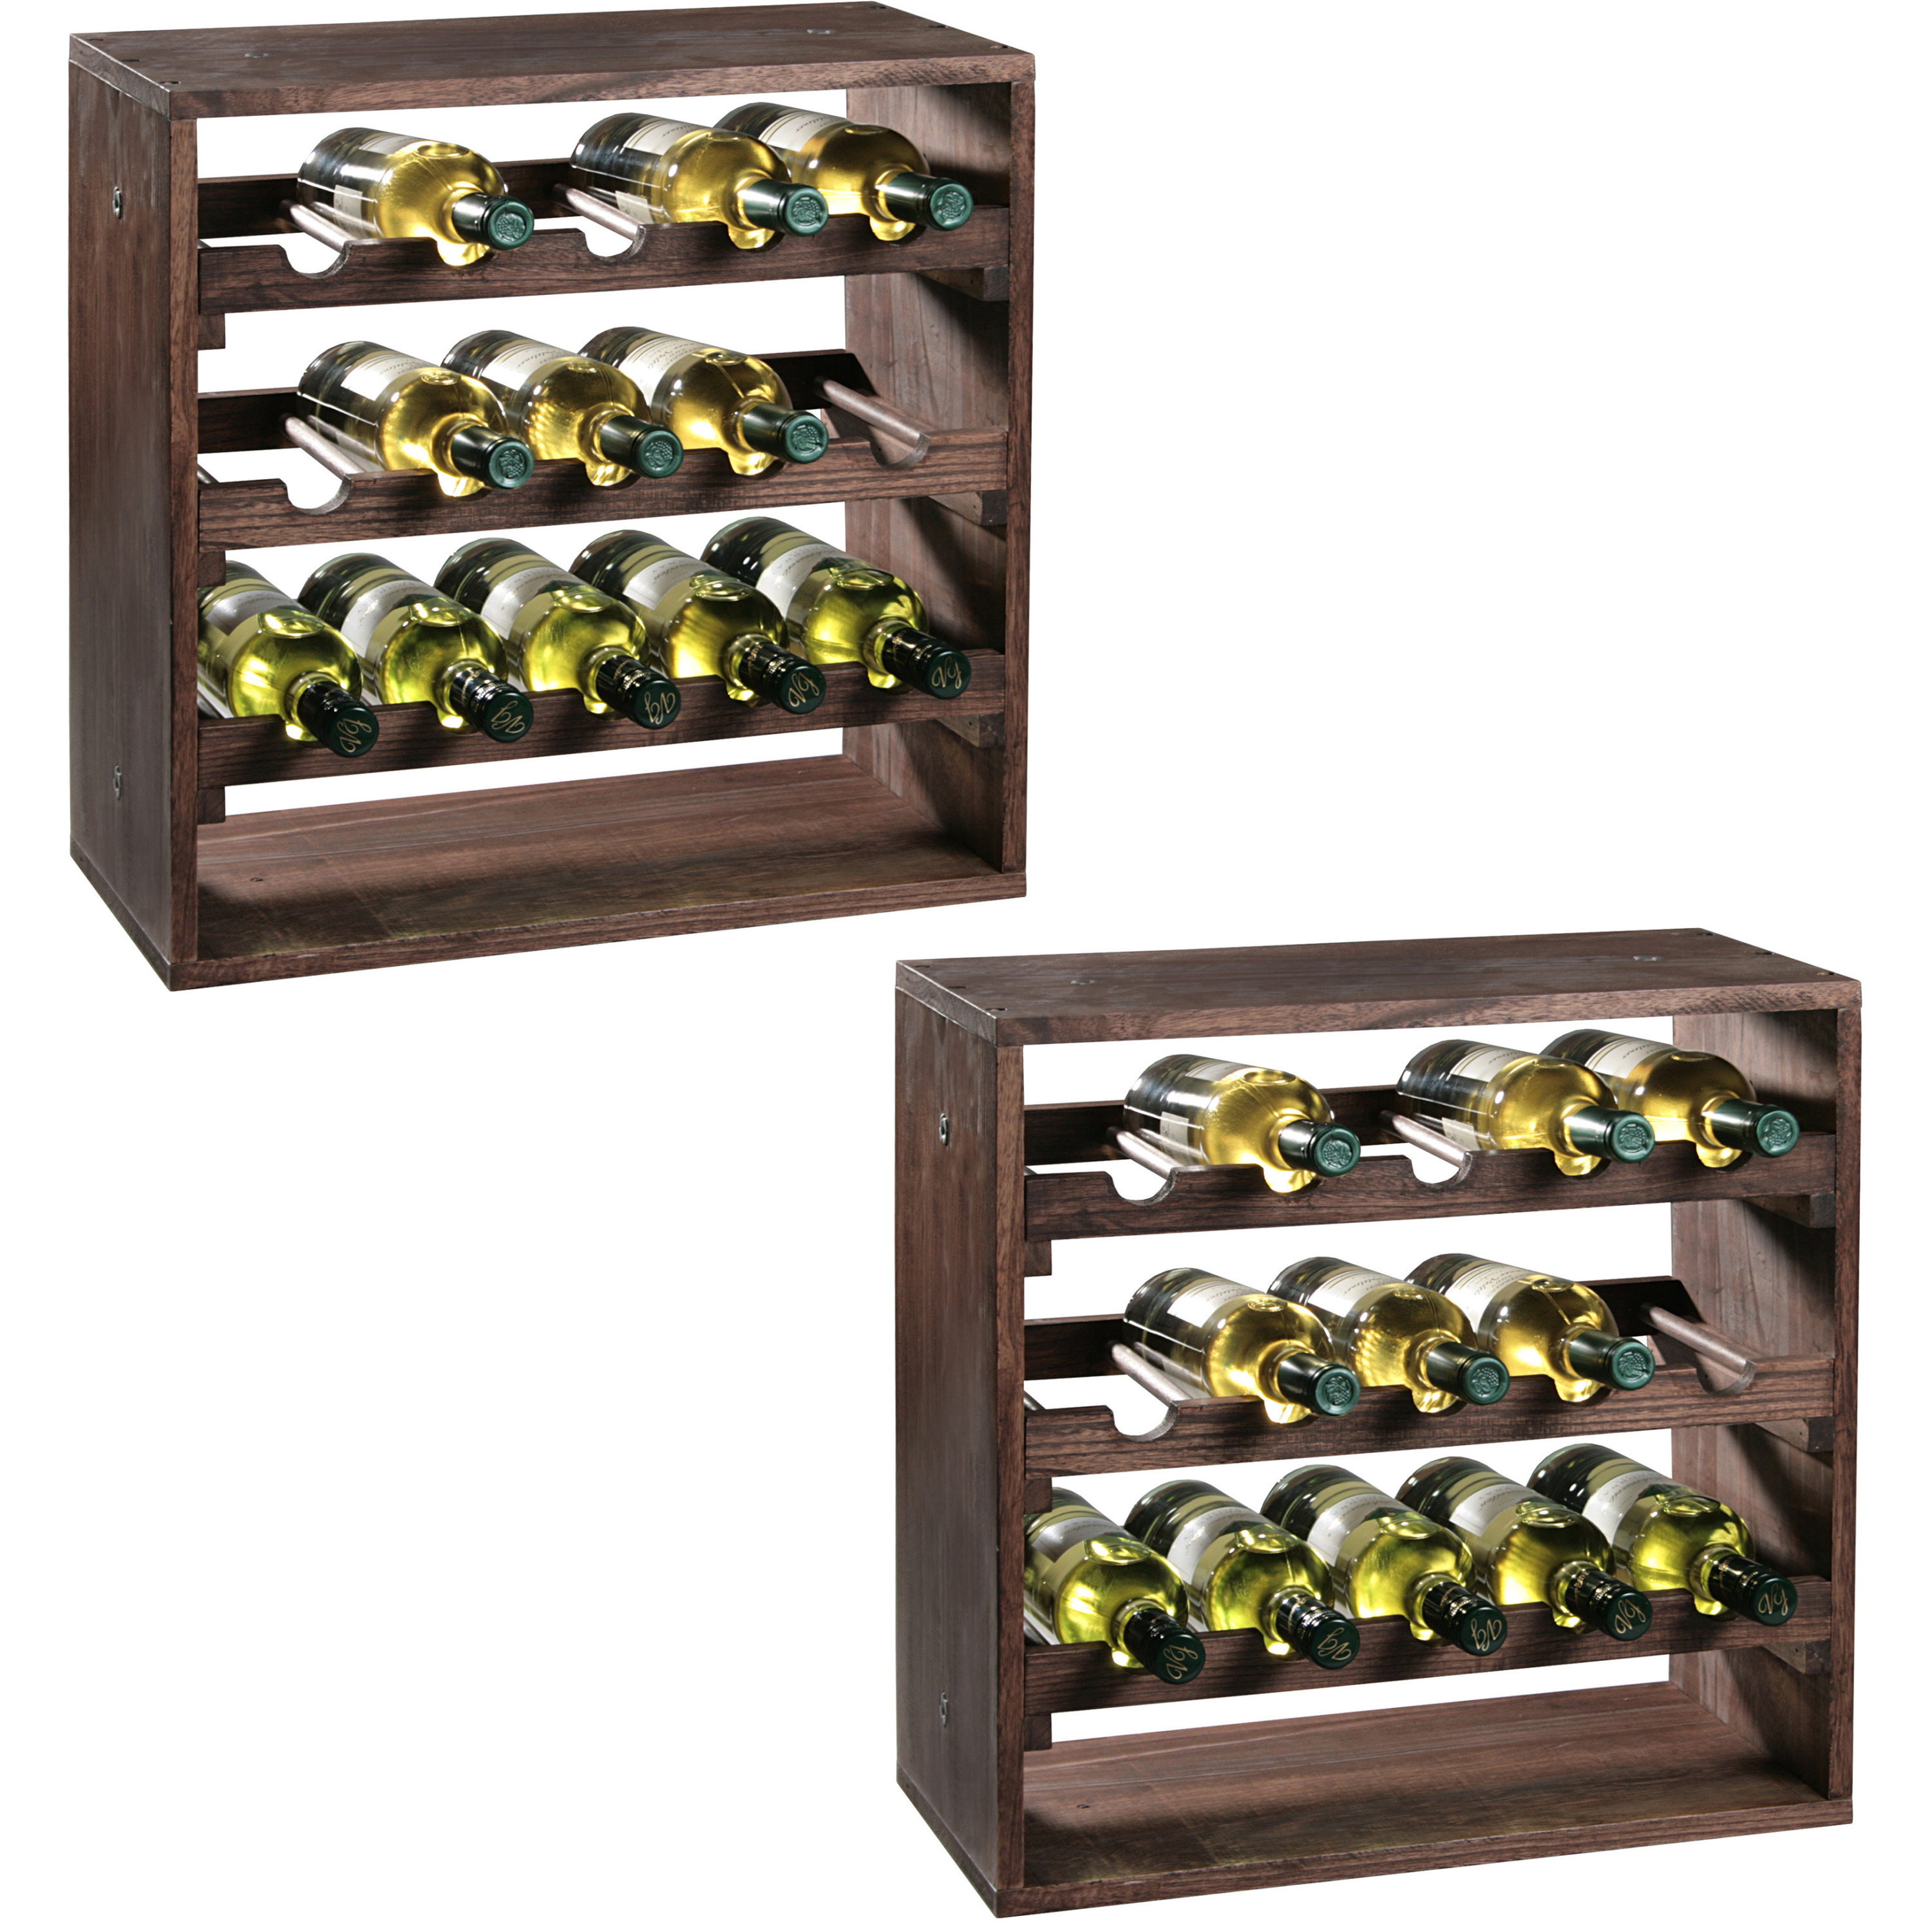 2x Houten wijnflessen rekken/wijnrekken vierkant voor 30 flessen 25 x 50 x 50 cm -